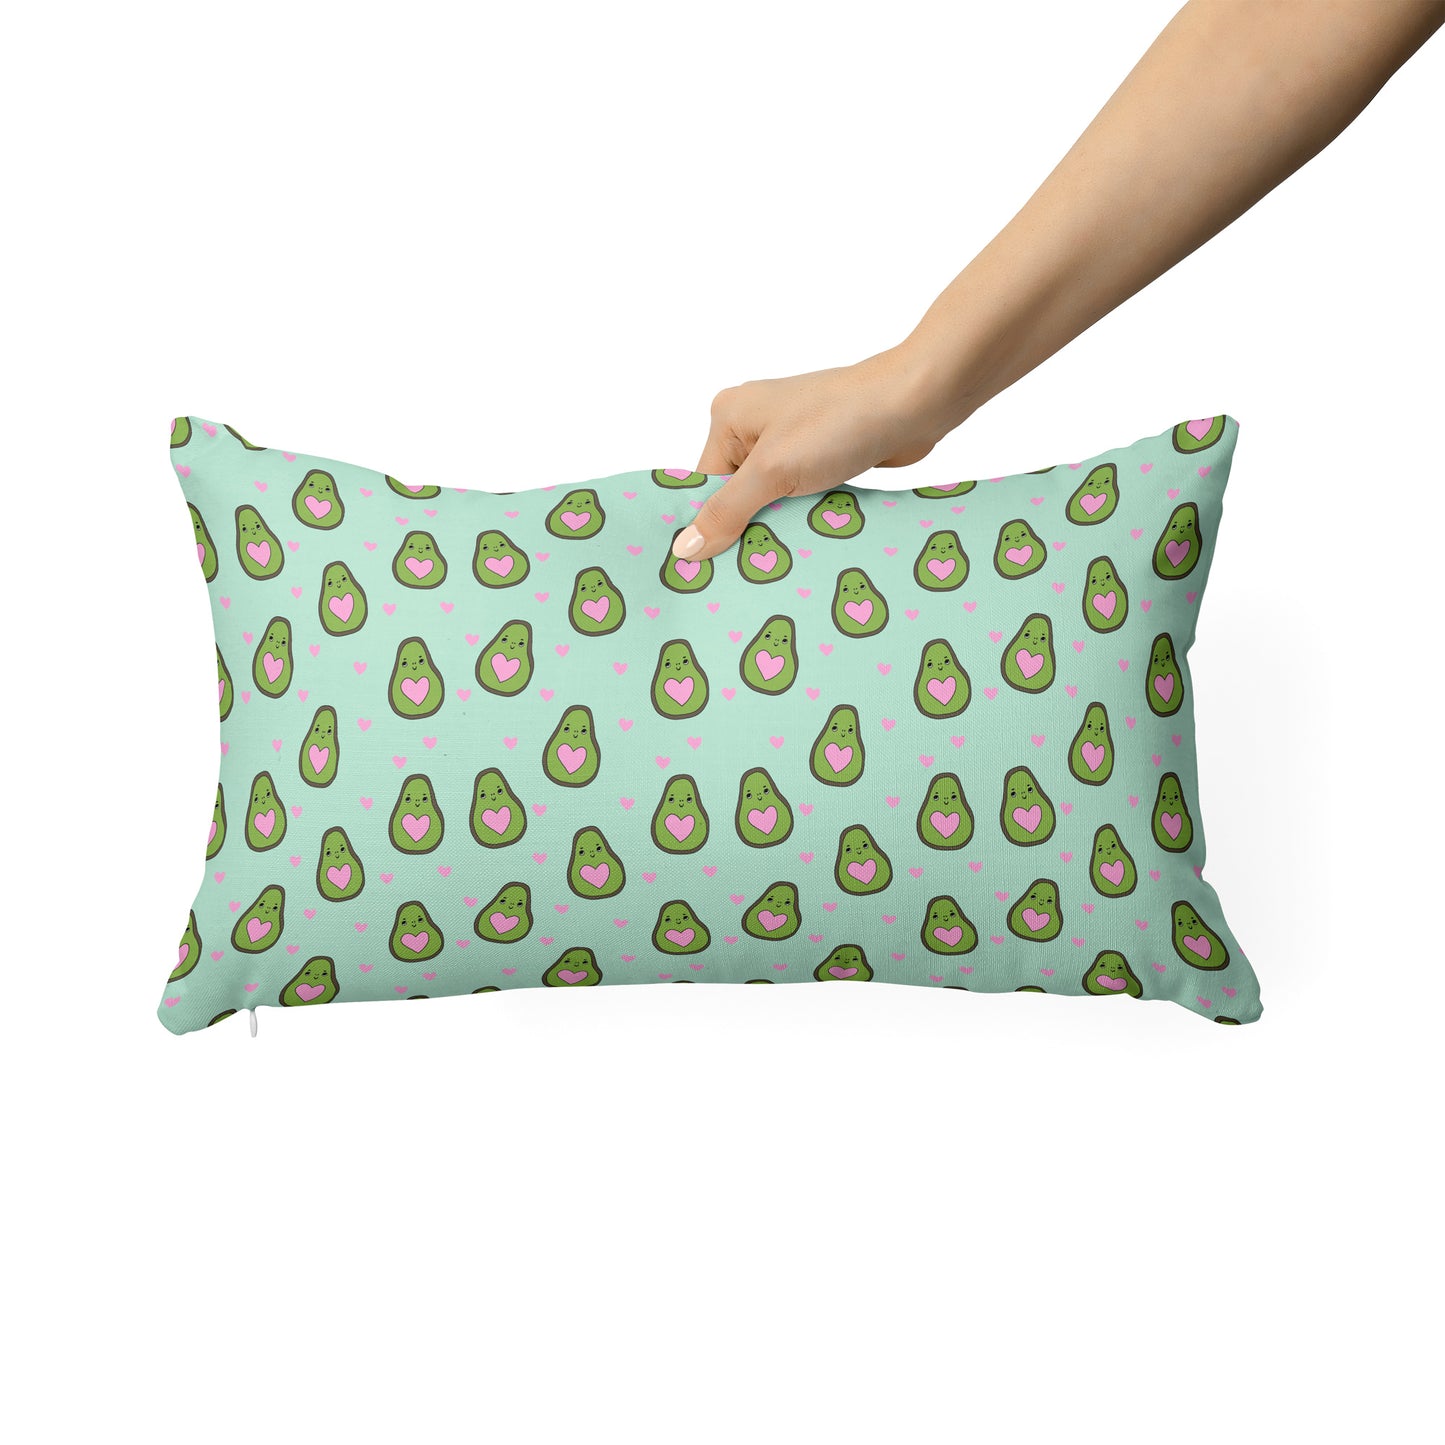 Love avocados - Rectangle Cushion